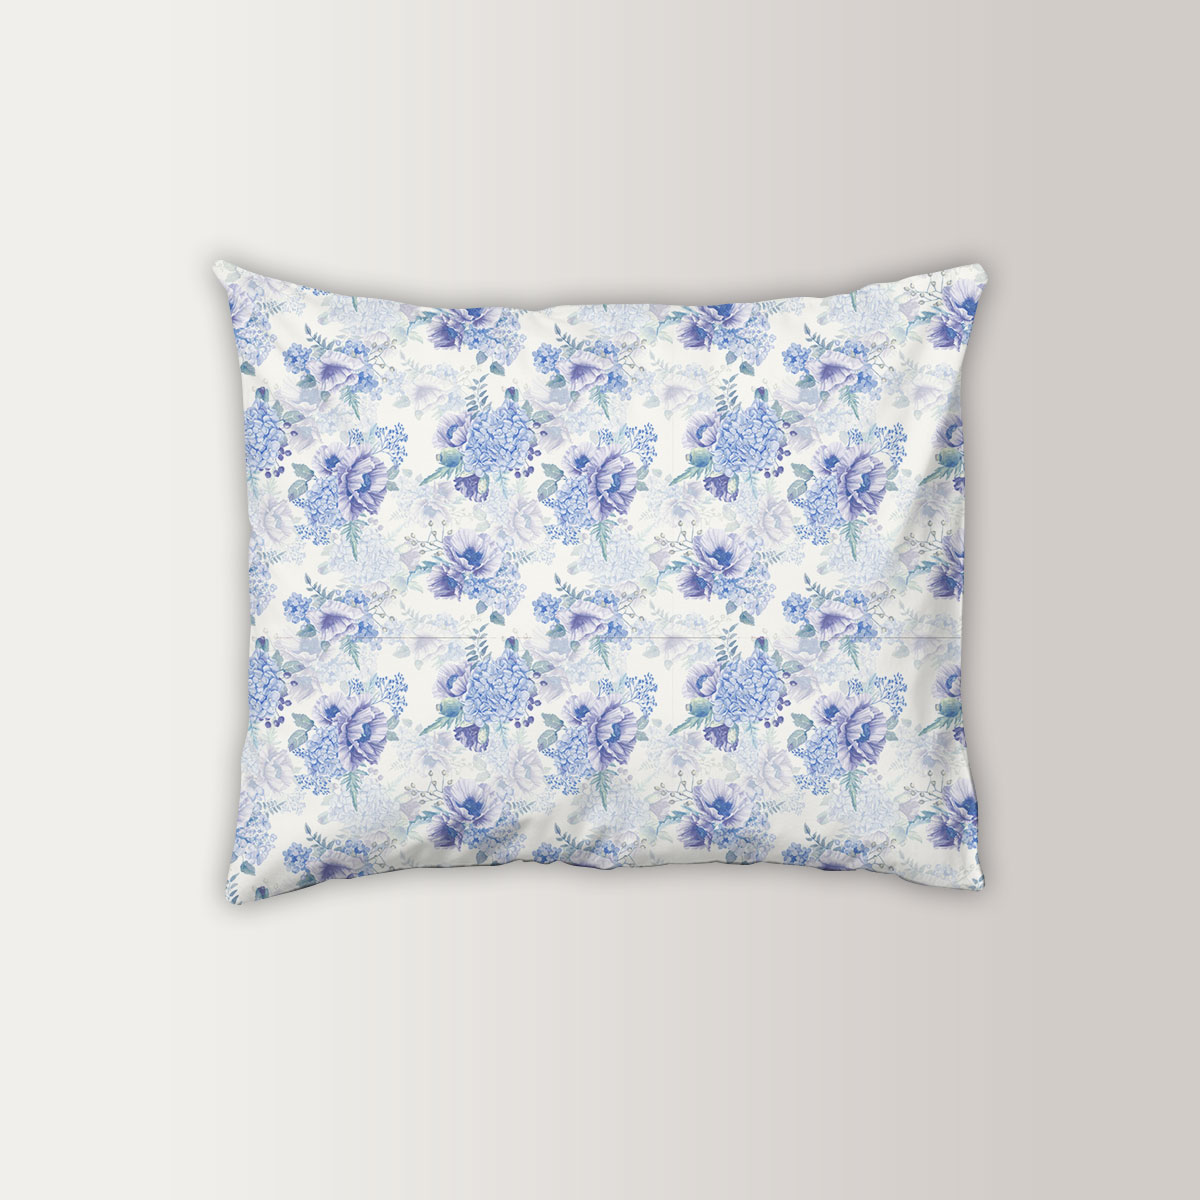 Vintage Blue Hydrangea Flowers Pillow Case